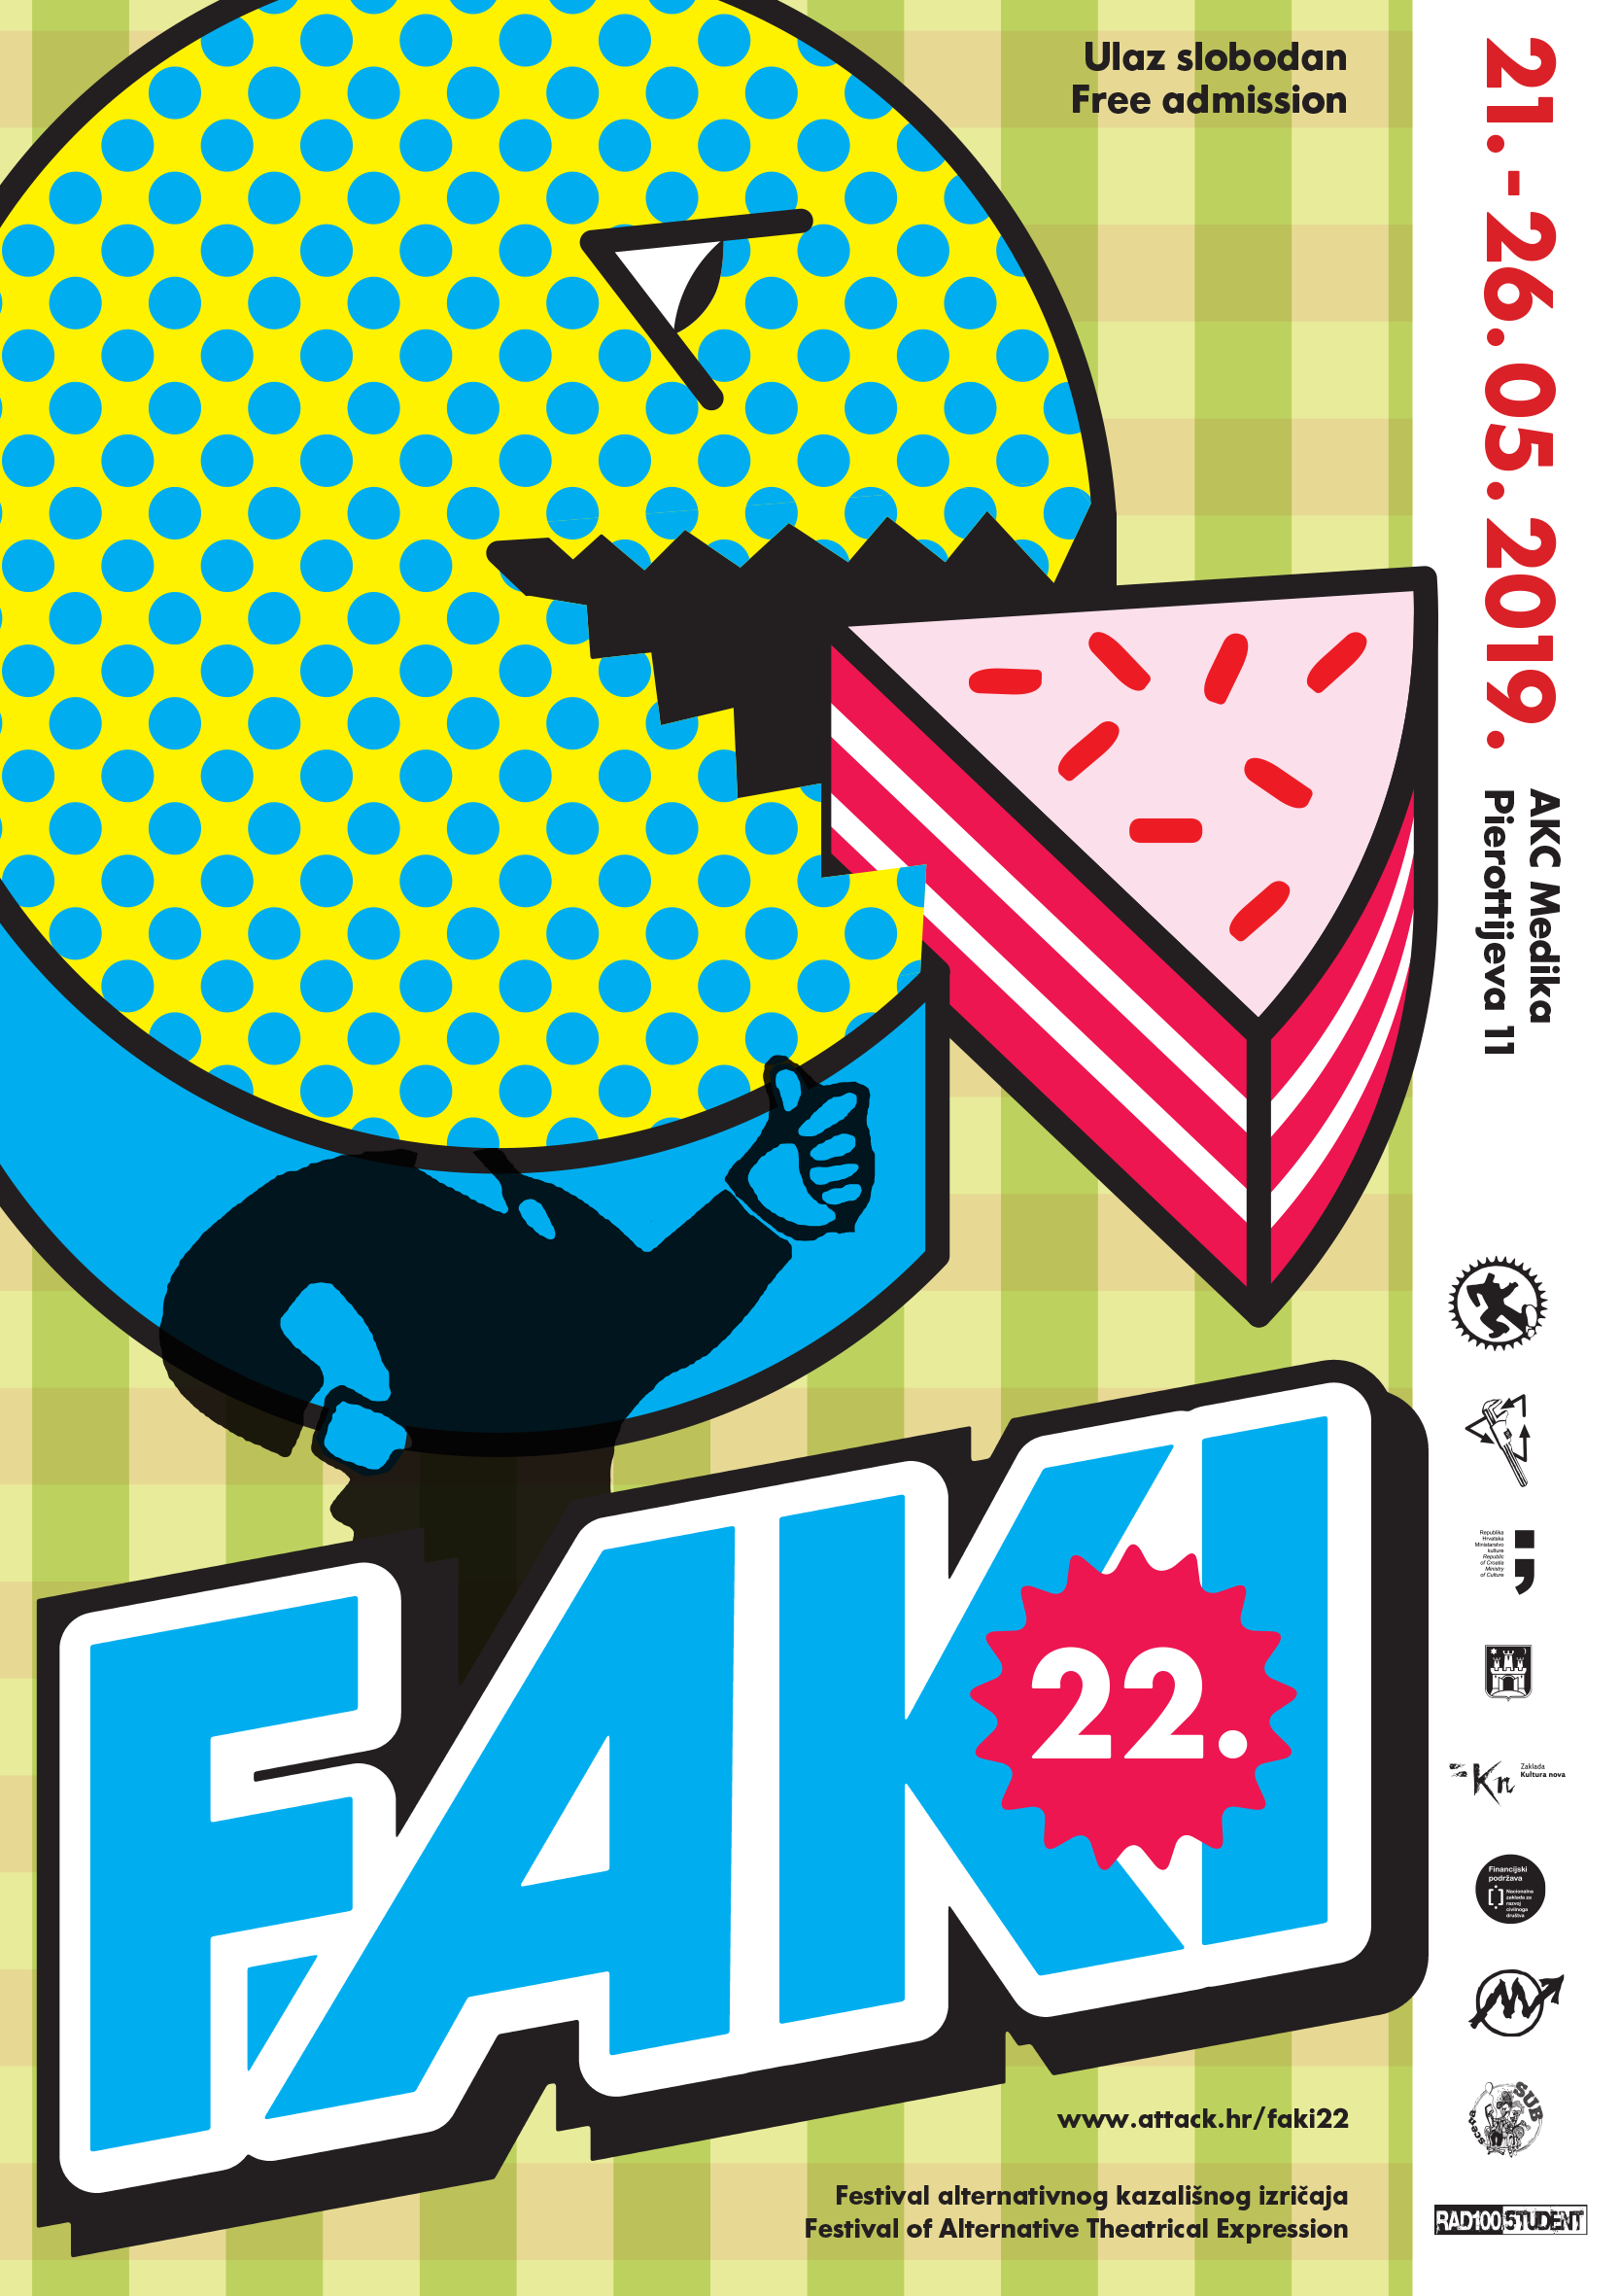 Festival alternativnog kazališnog izričaja - FAKI 22.